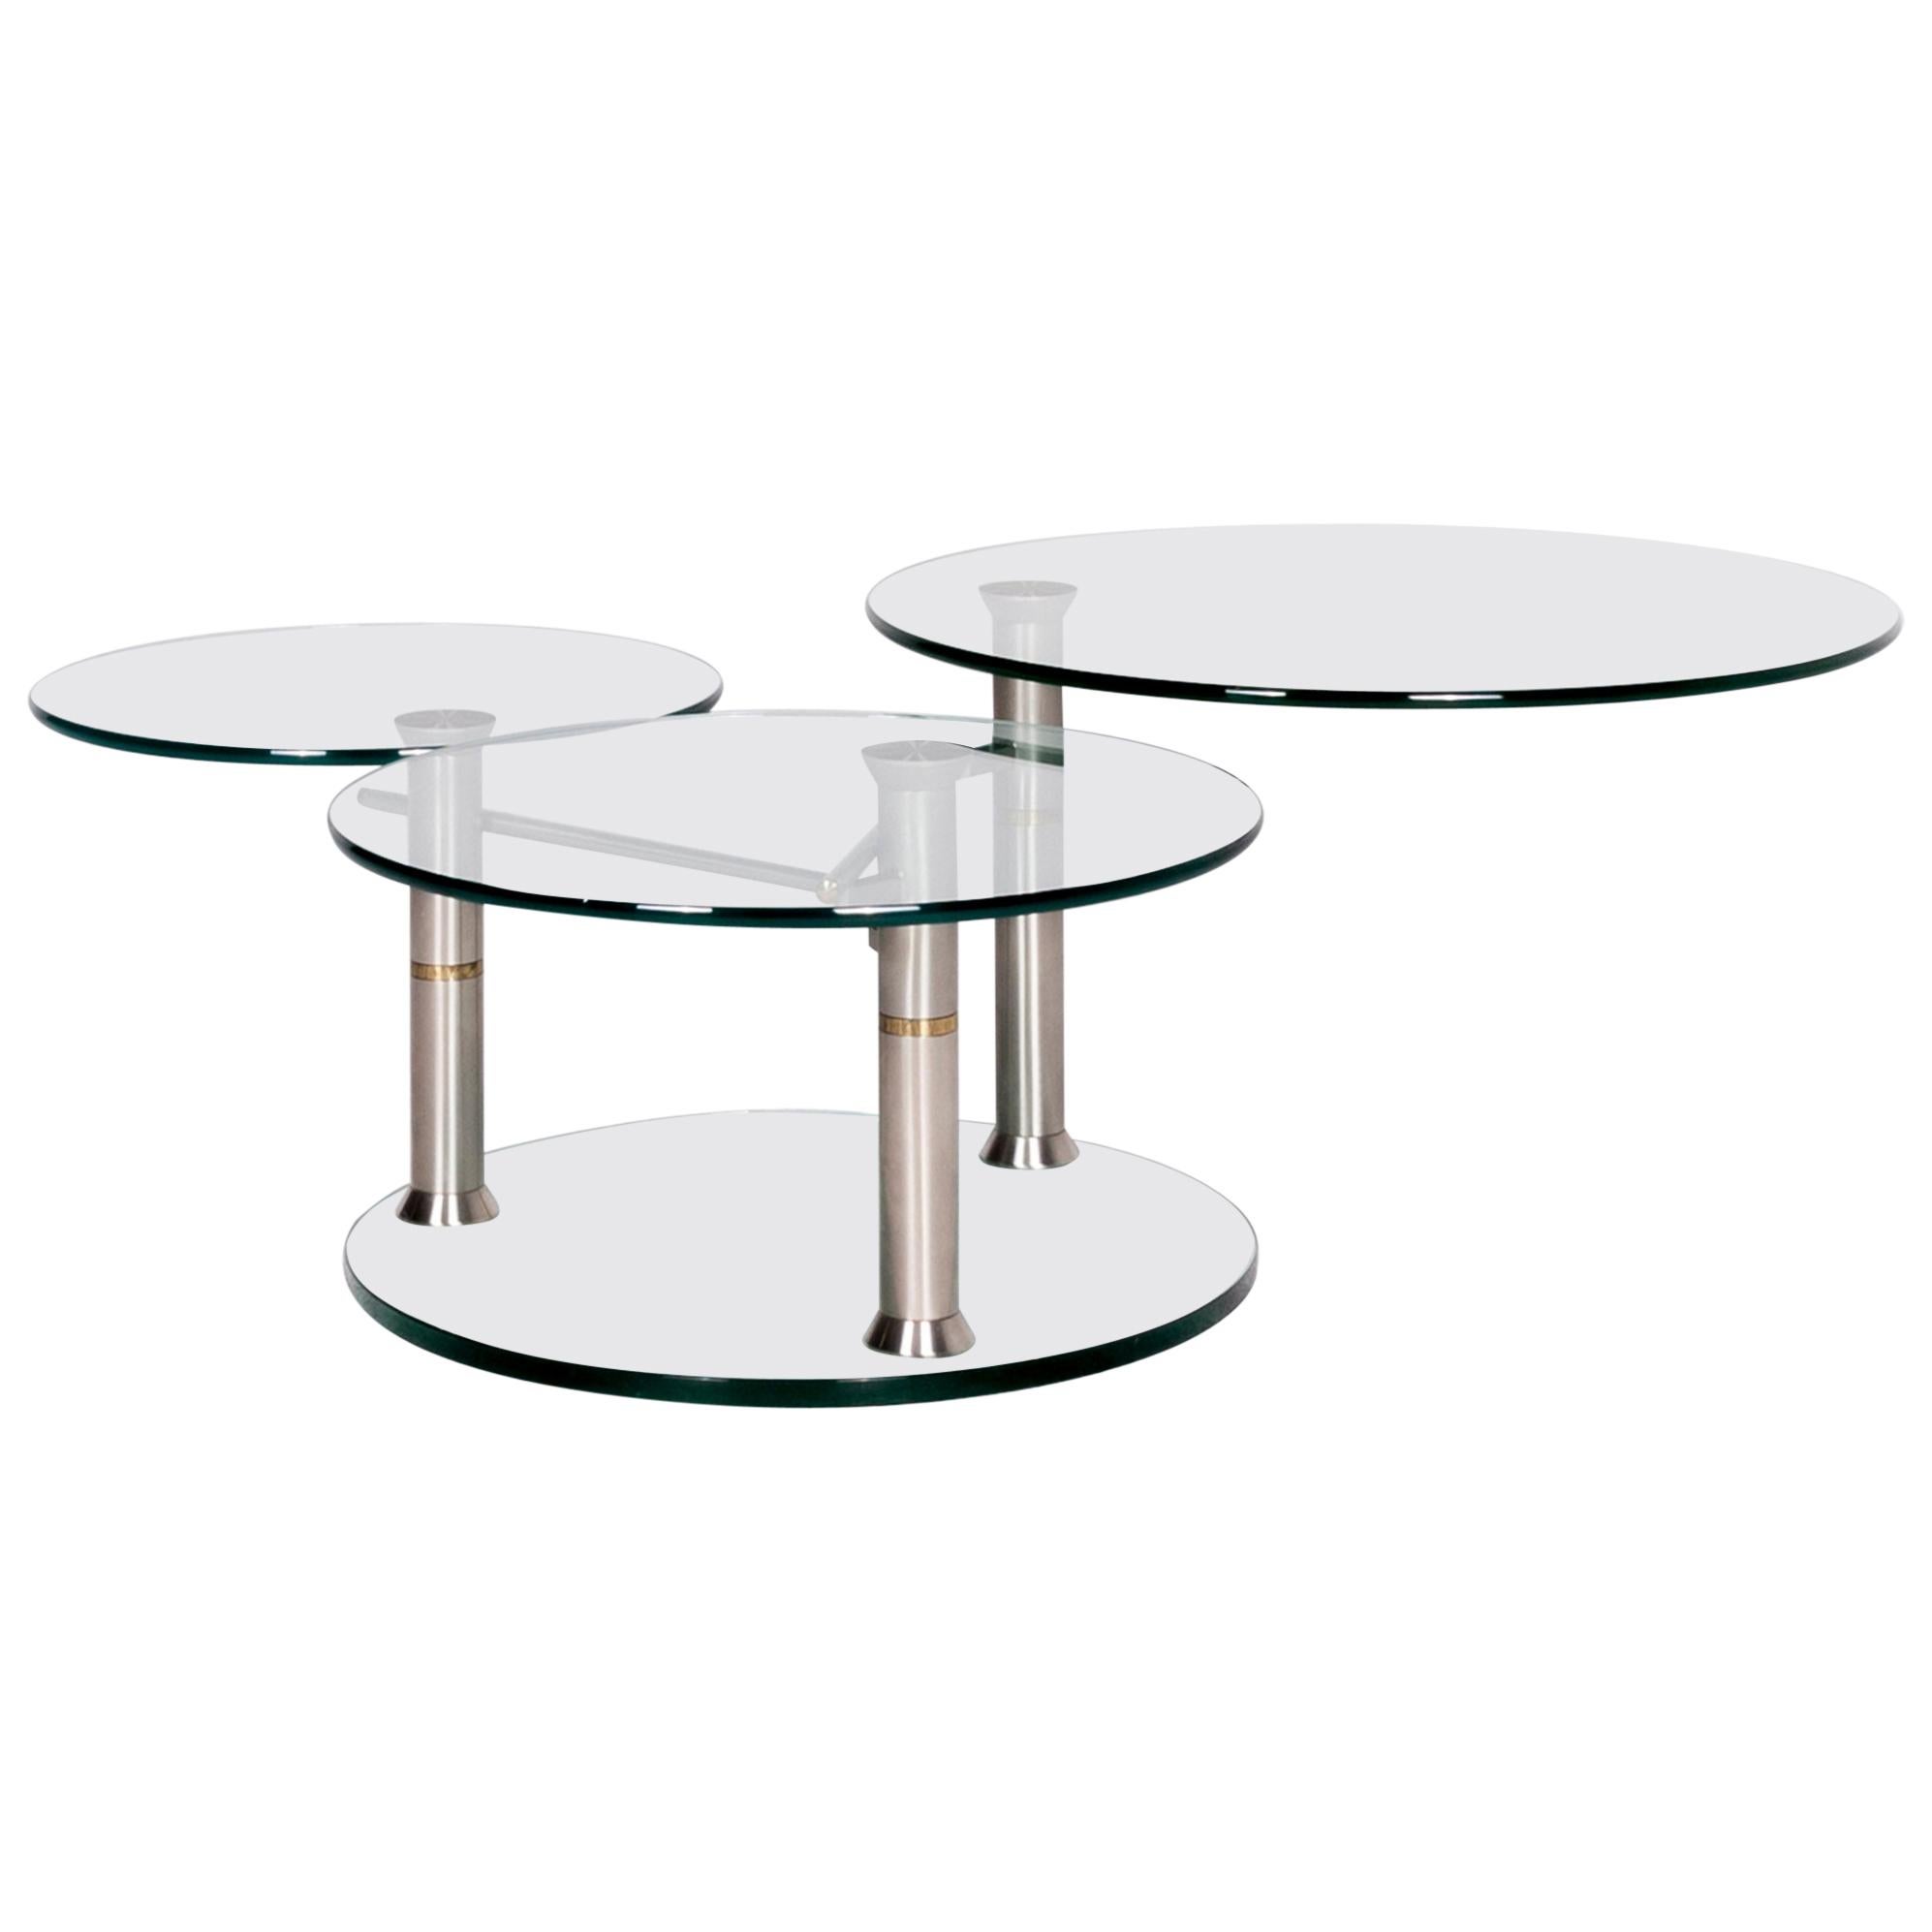 Draenert Intermezzo 1132 Designer Glass Table Silver by Georg Appeltshauser